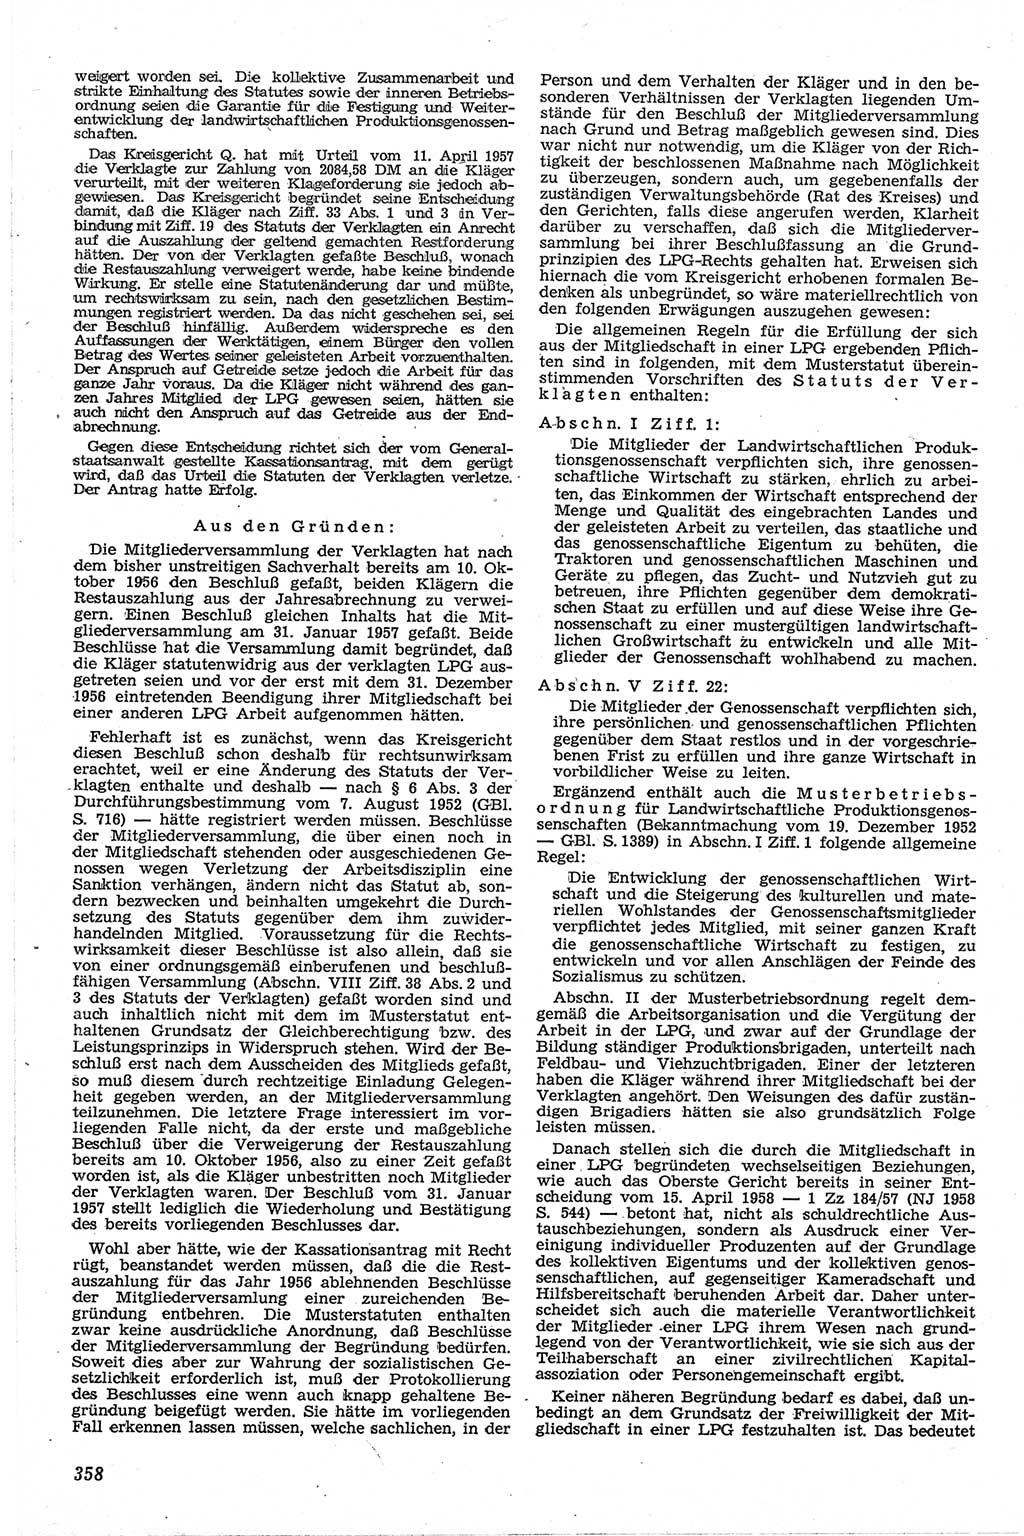 Neue Justiz (NJ), Zeitschrift für Recht und Rechtswissenschaft [Deutsche Demokratische Republik (DDR)], 13. Jahrgang 1959, Seite 358 (NJ DDR 1959, S. 358)